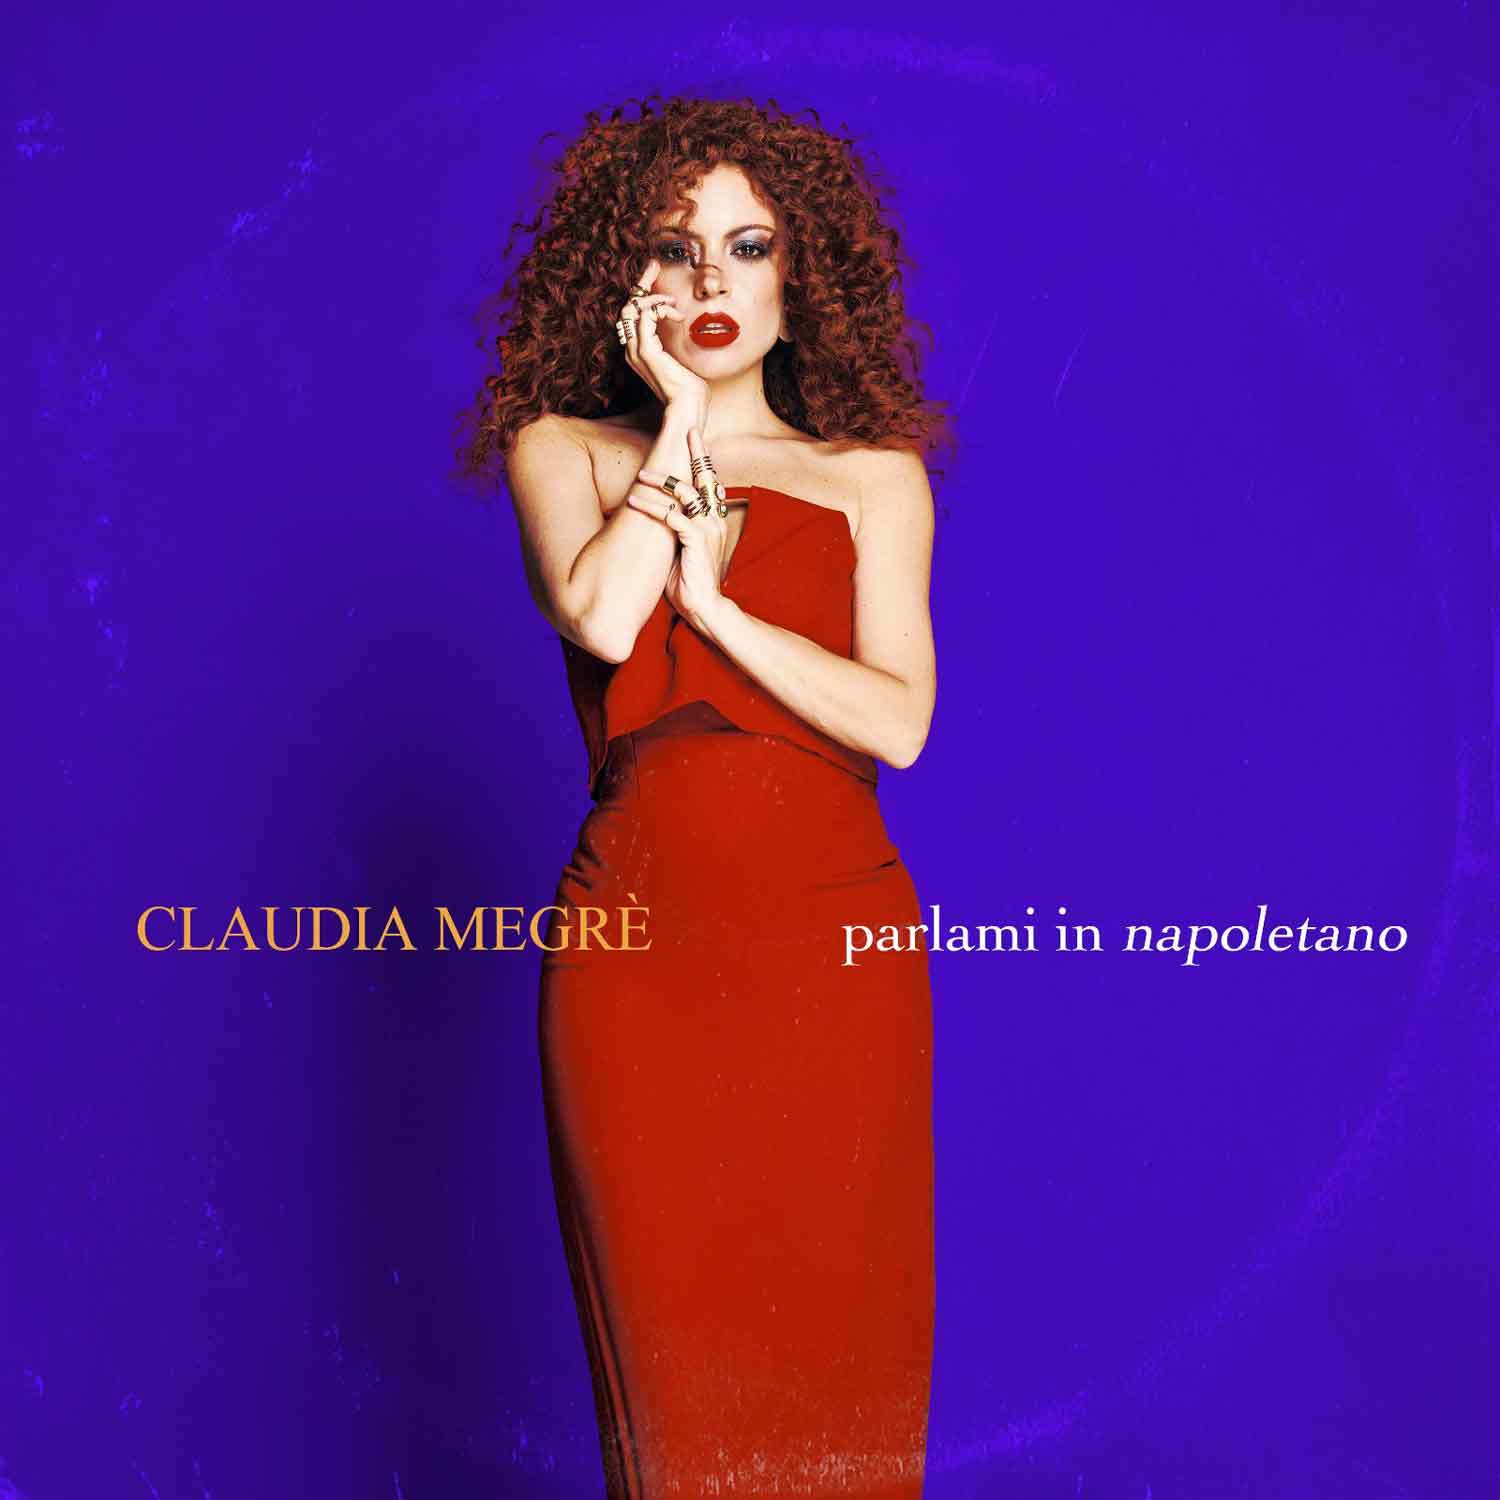 Copertina singolo Claudia Megrè